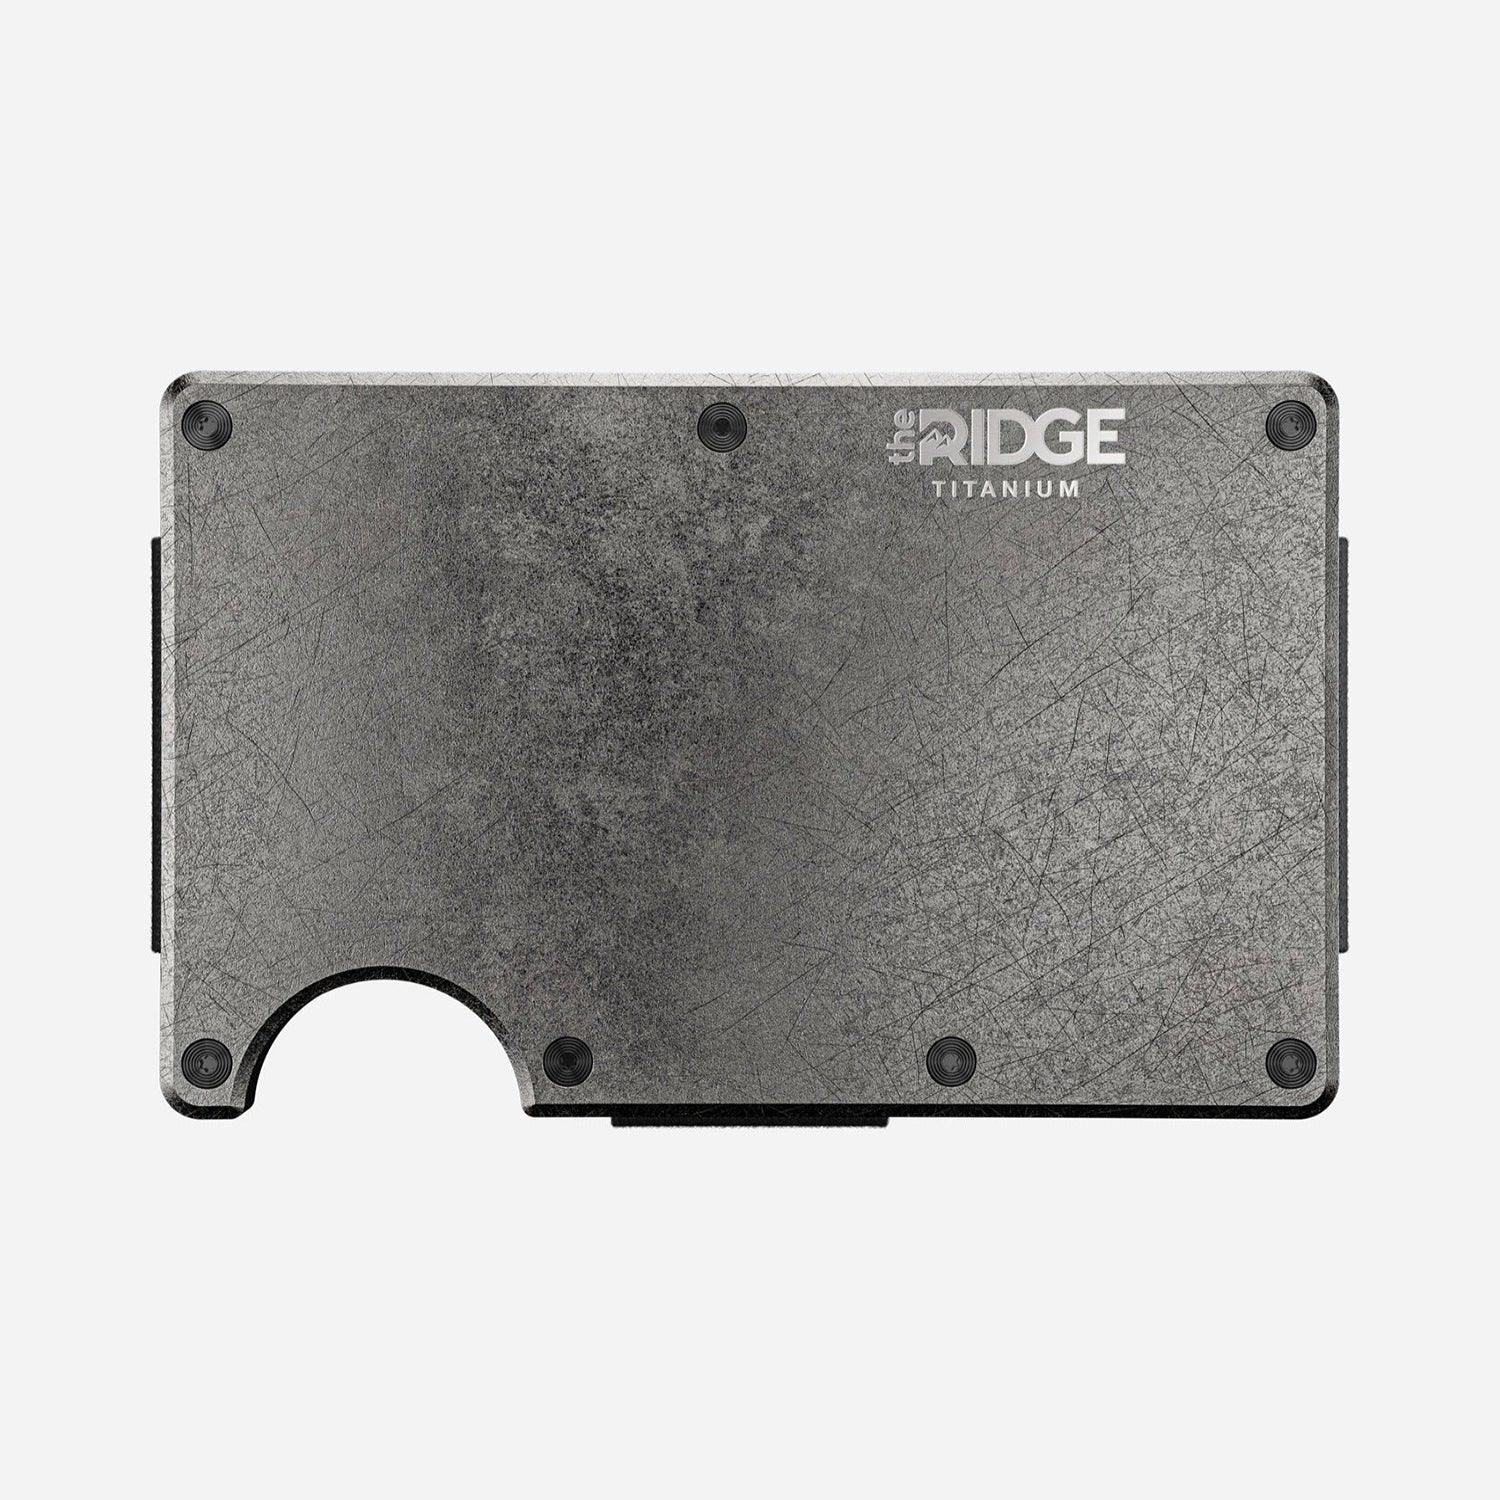 The Ridge Royal Black Aluminum Keycase